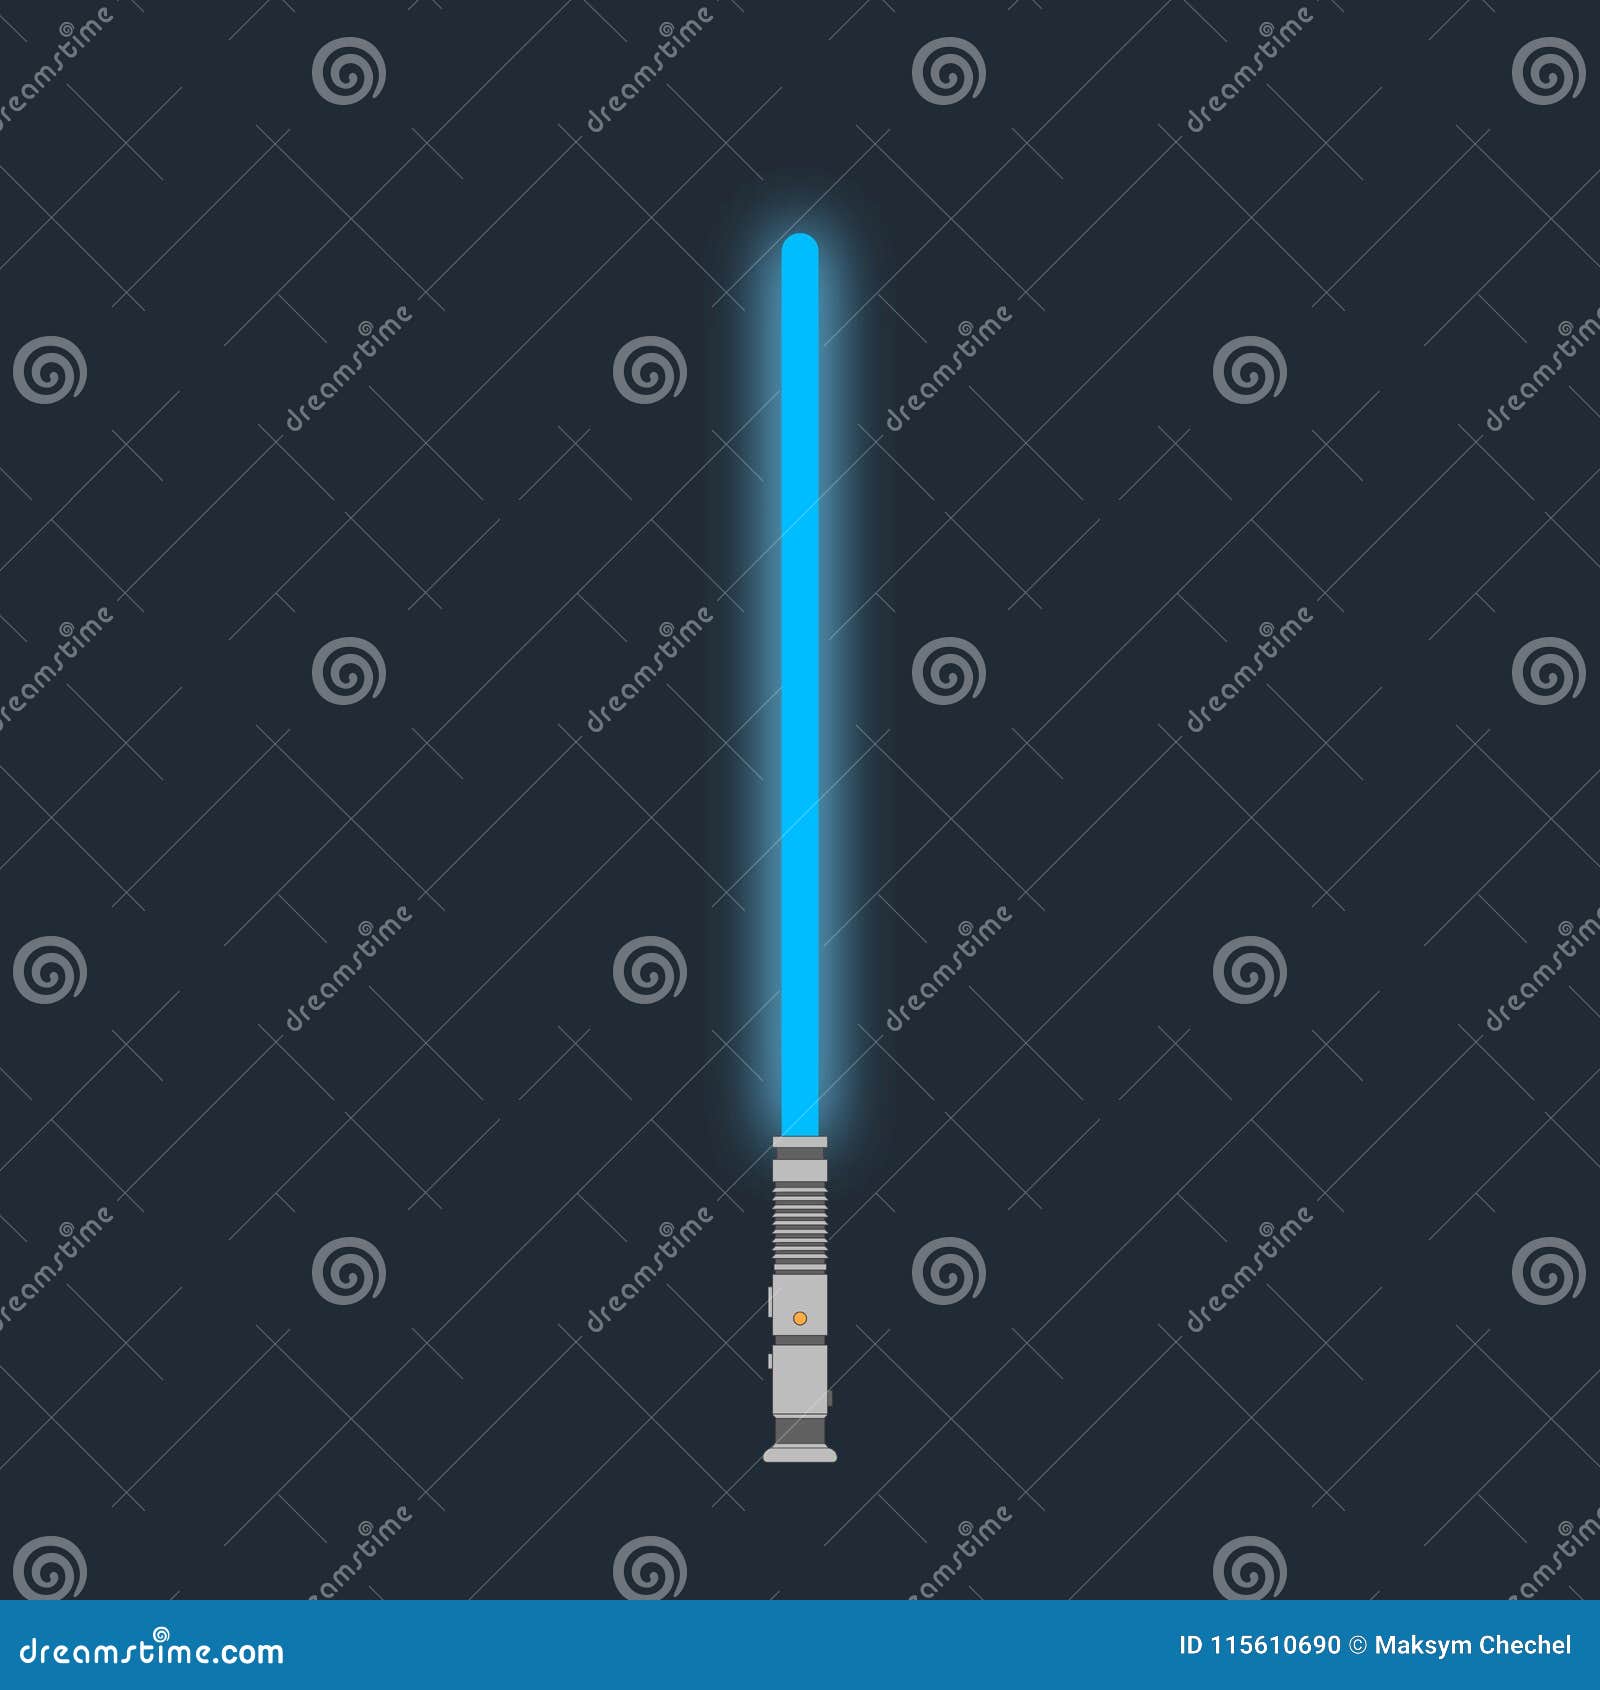 Star wars Reys blue lightsaber vs Kylo Rens red lightsaber 4K wallpaper  download